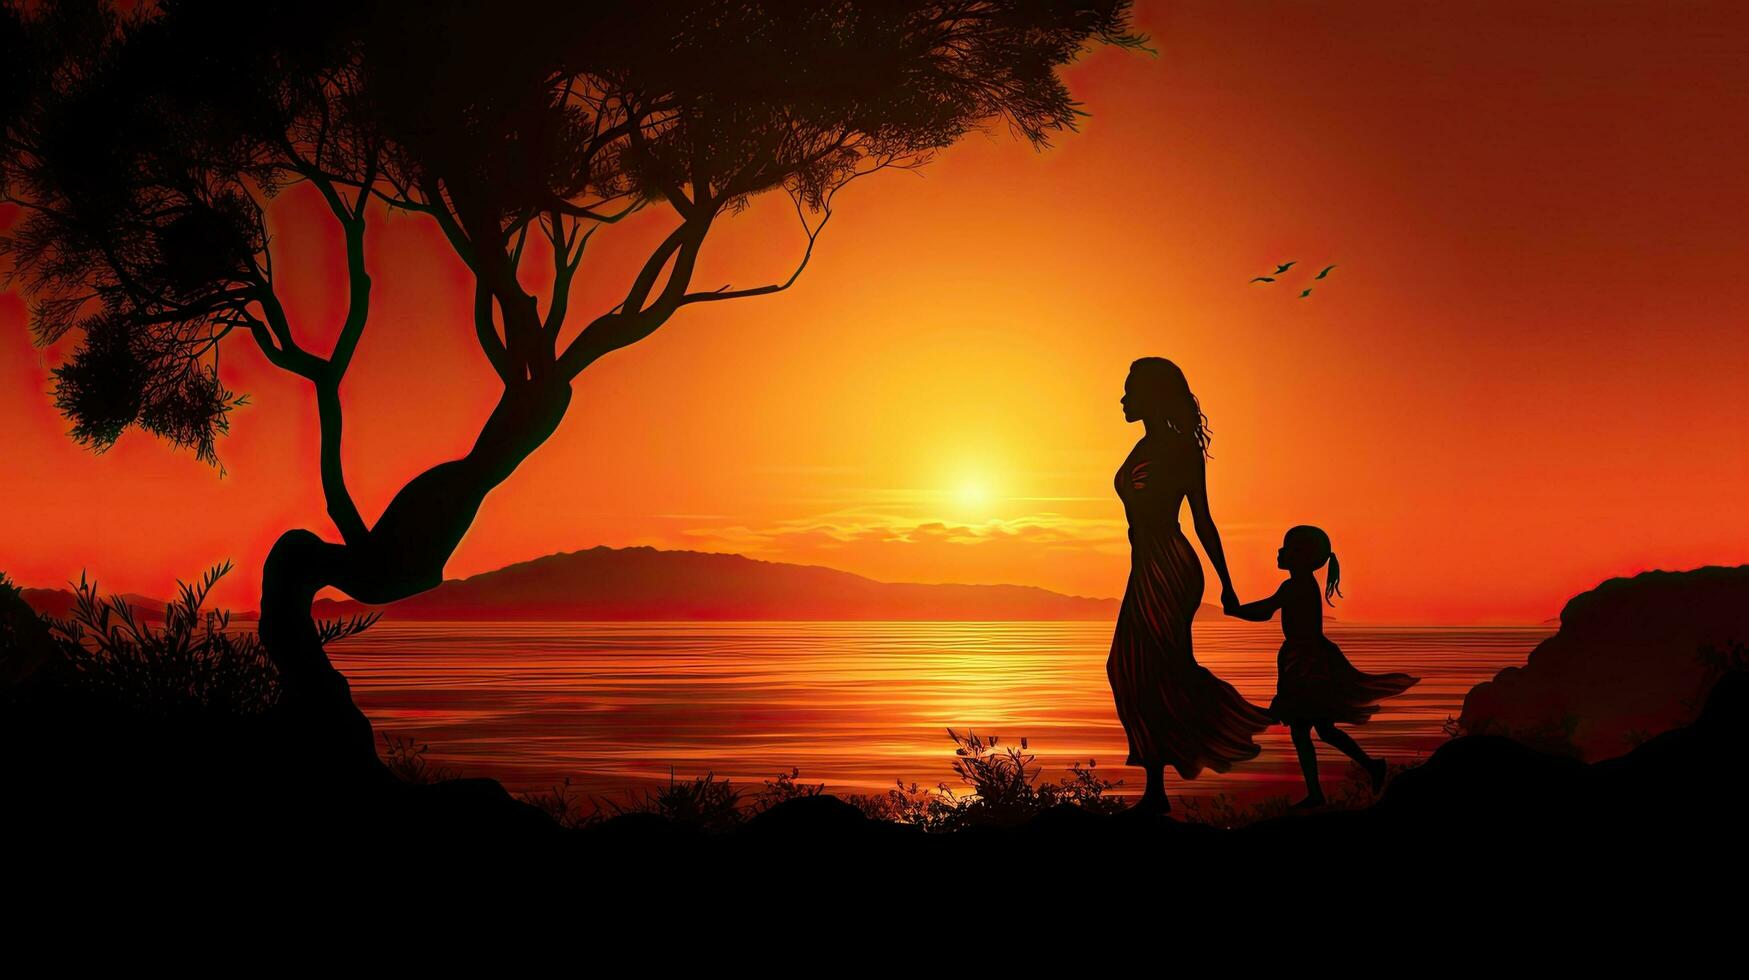 madre y niño silueta en contra un puesta de sol foto